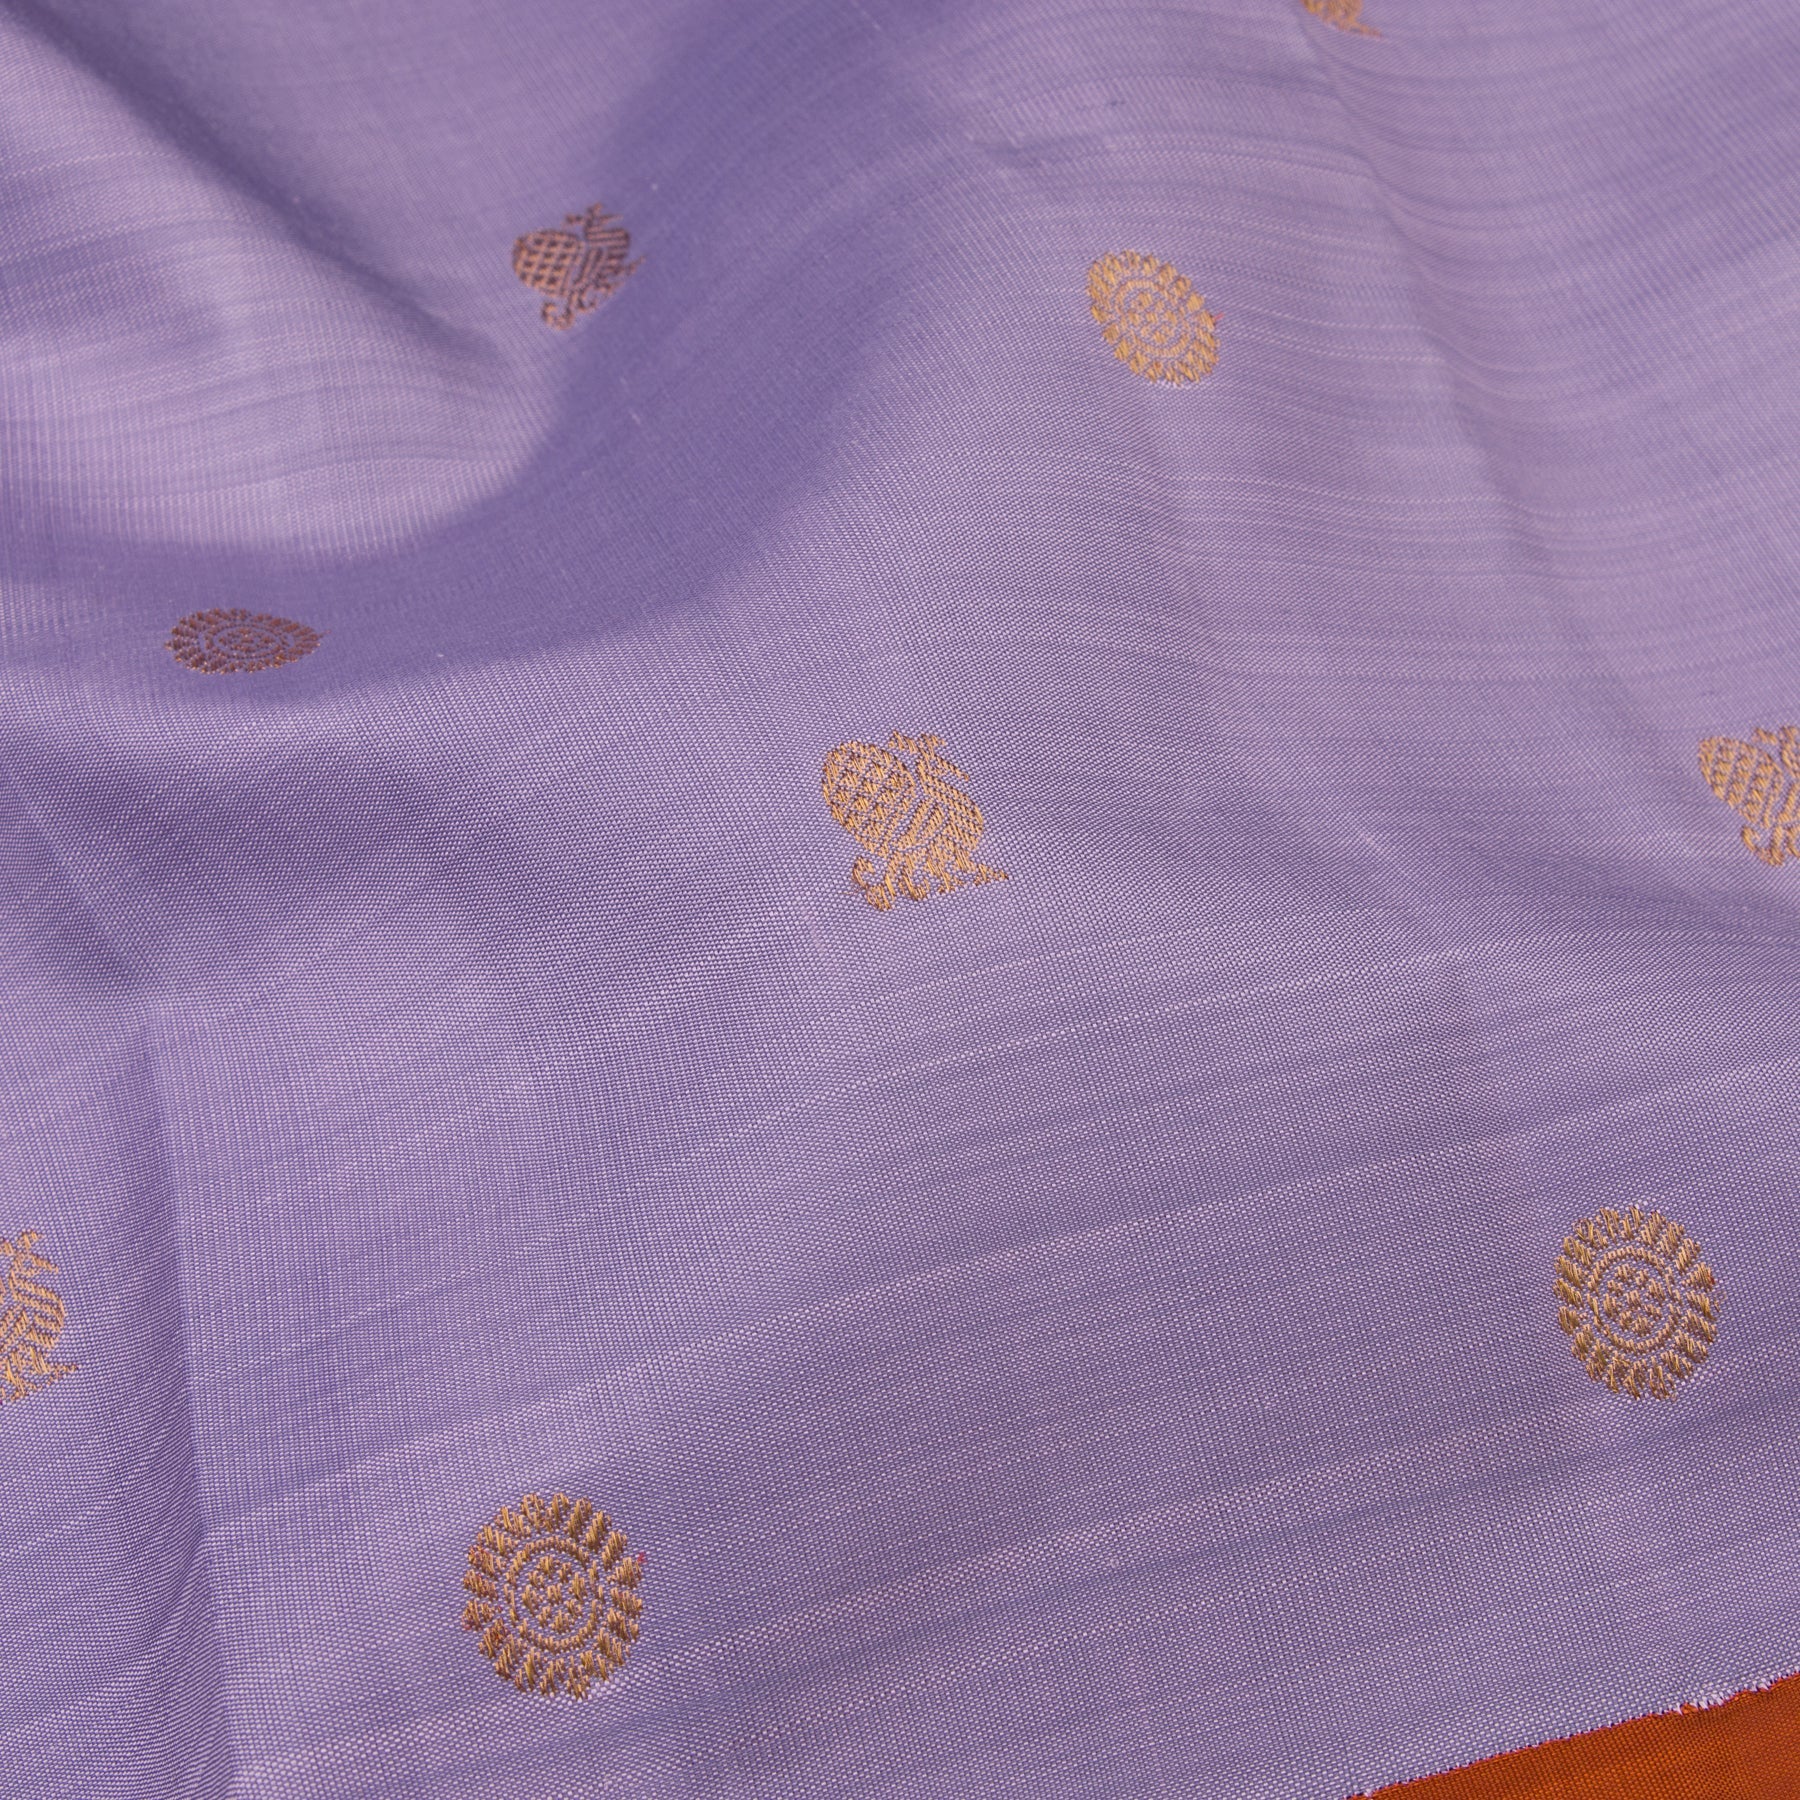  Kanakavalli Kanjivaram Silk Sari 22-599-HS001-09352 - Fabric View